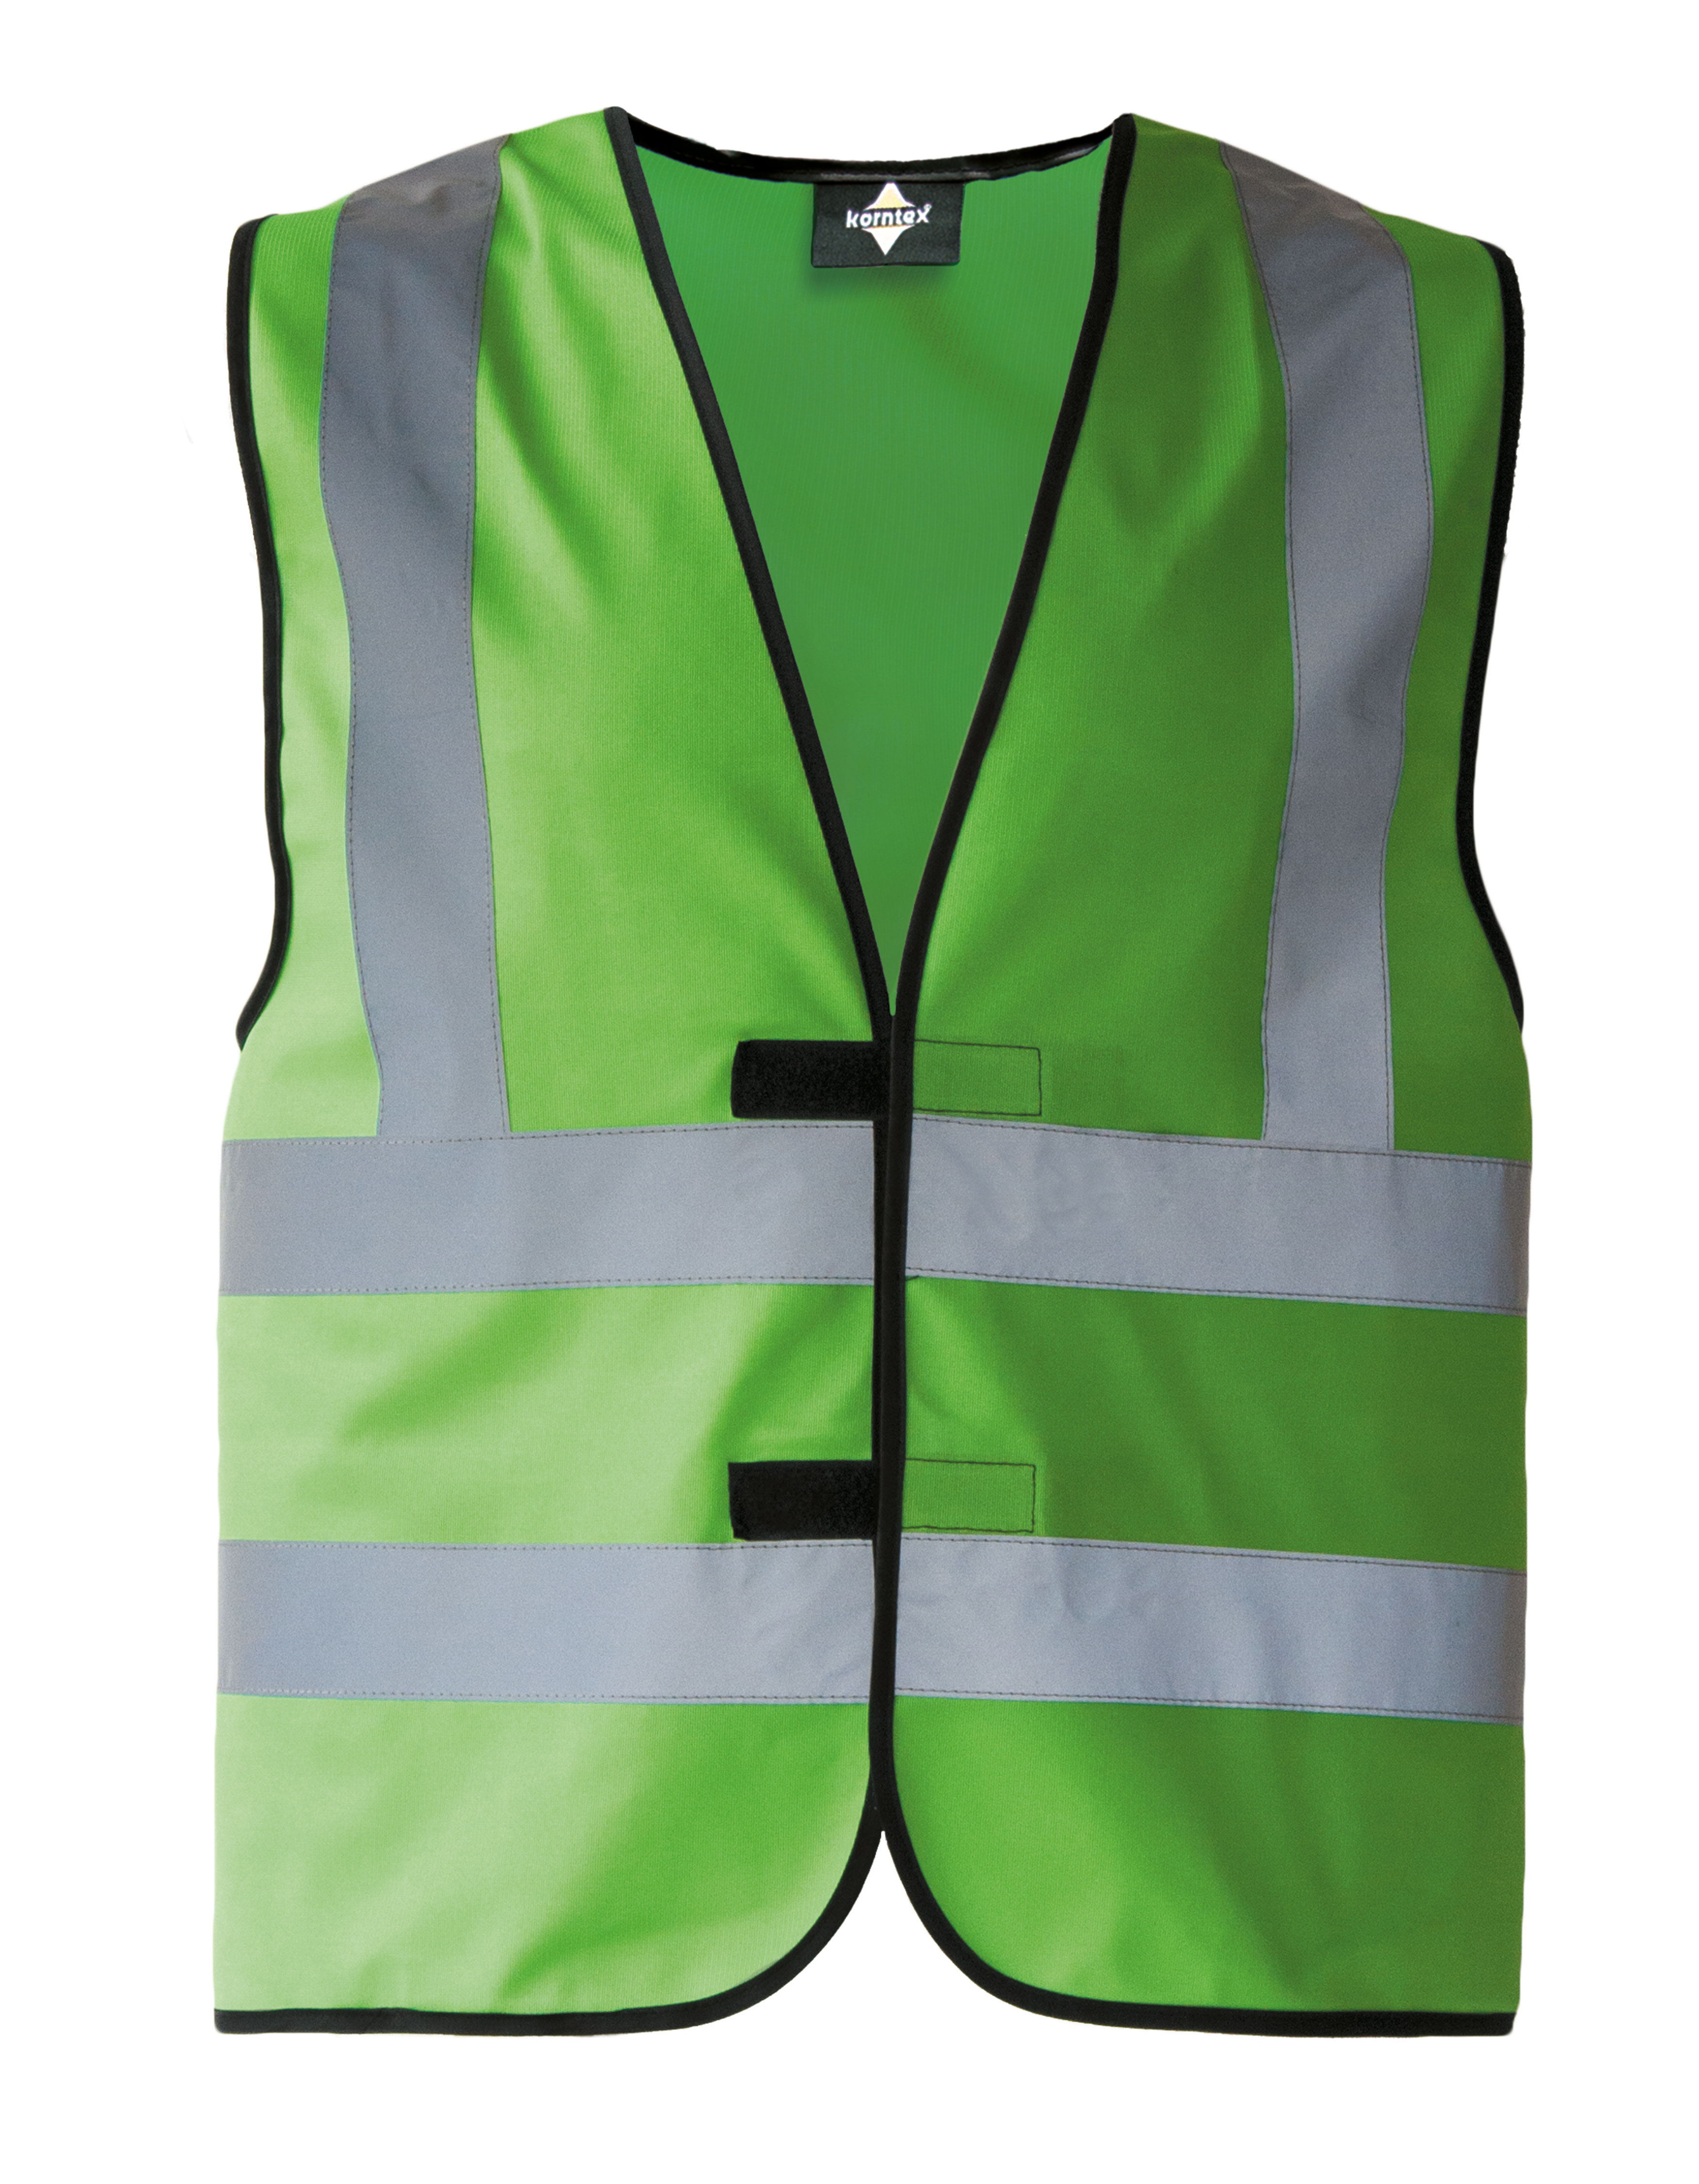 Korntex Hi-Vis Safety Vest With 4 Reflective Stripes Hannover